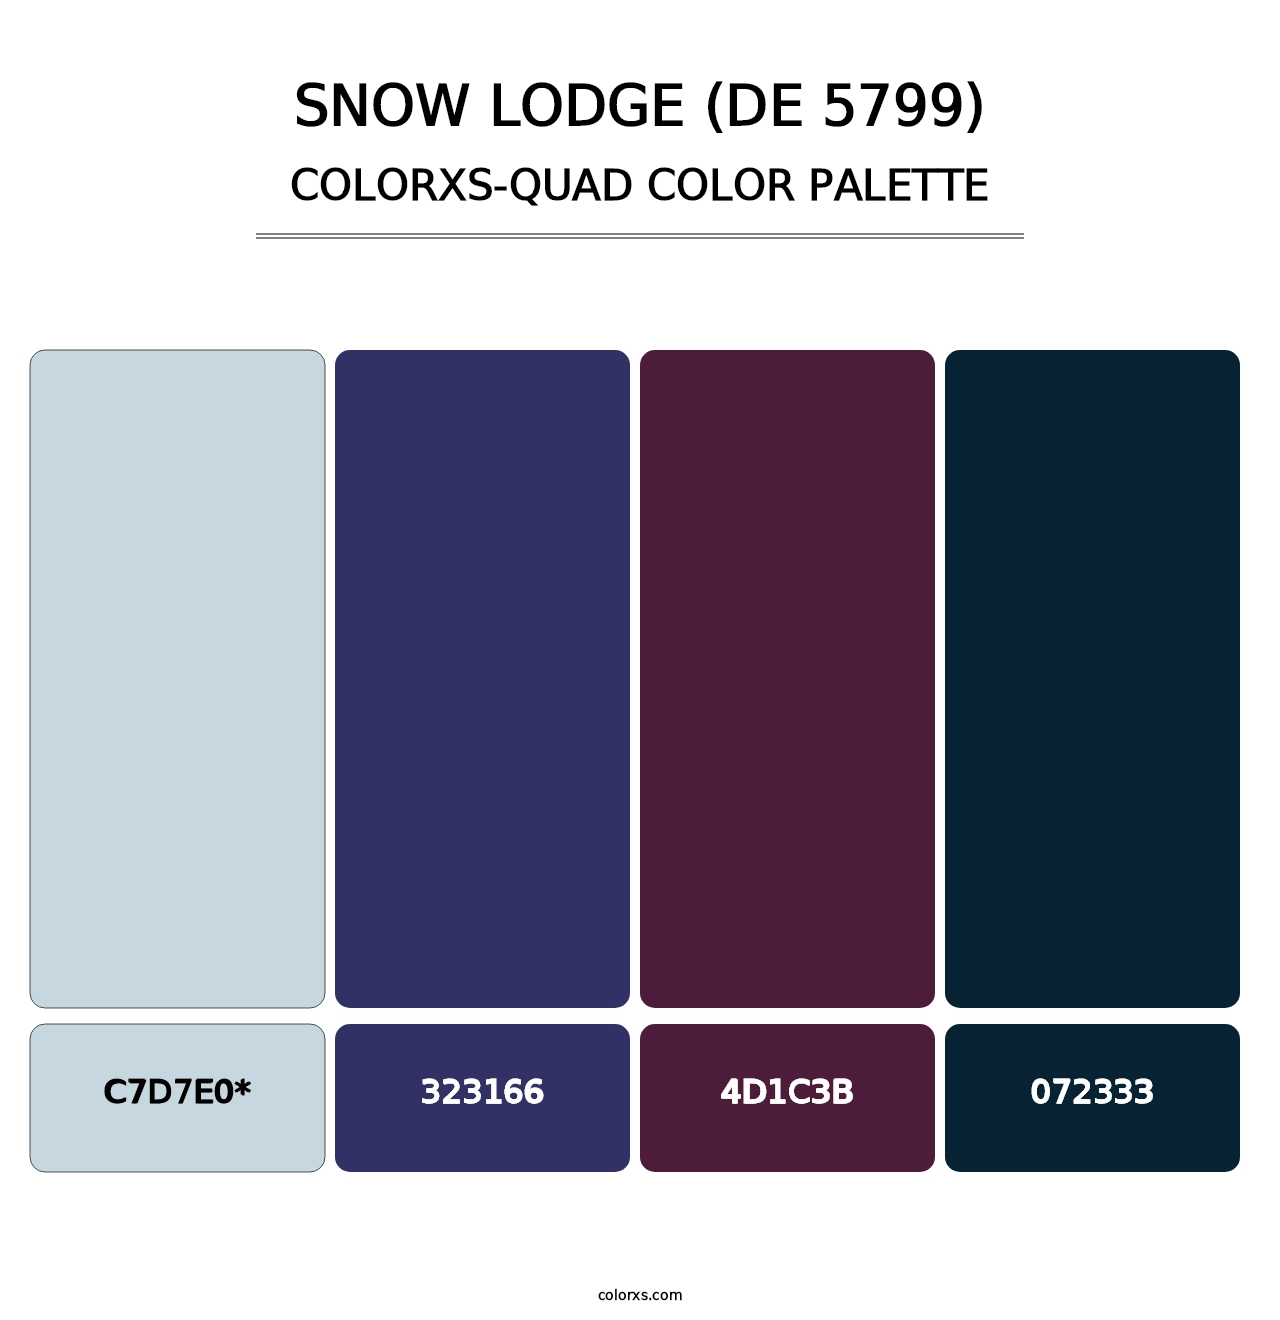 Snow Lodge (DE 5799) - Colorxs Quad Palette